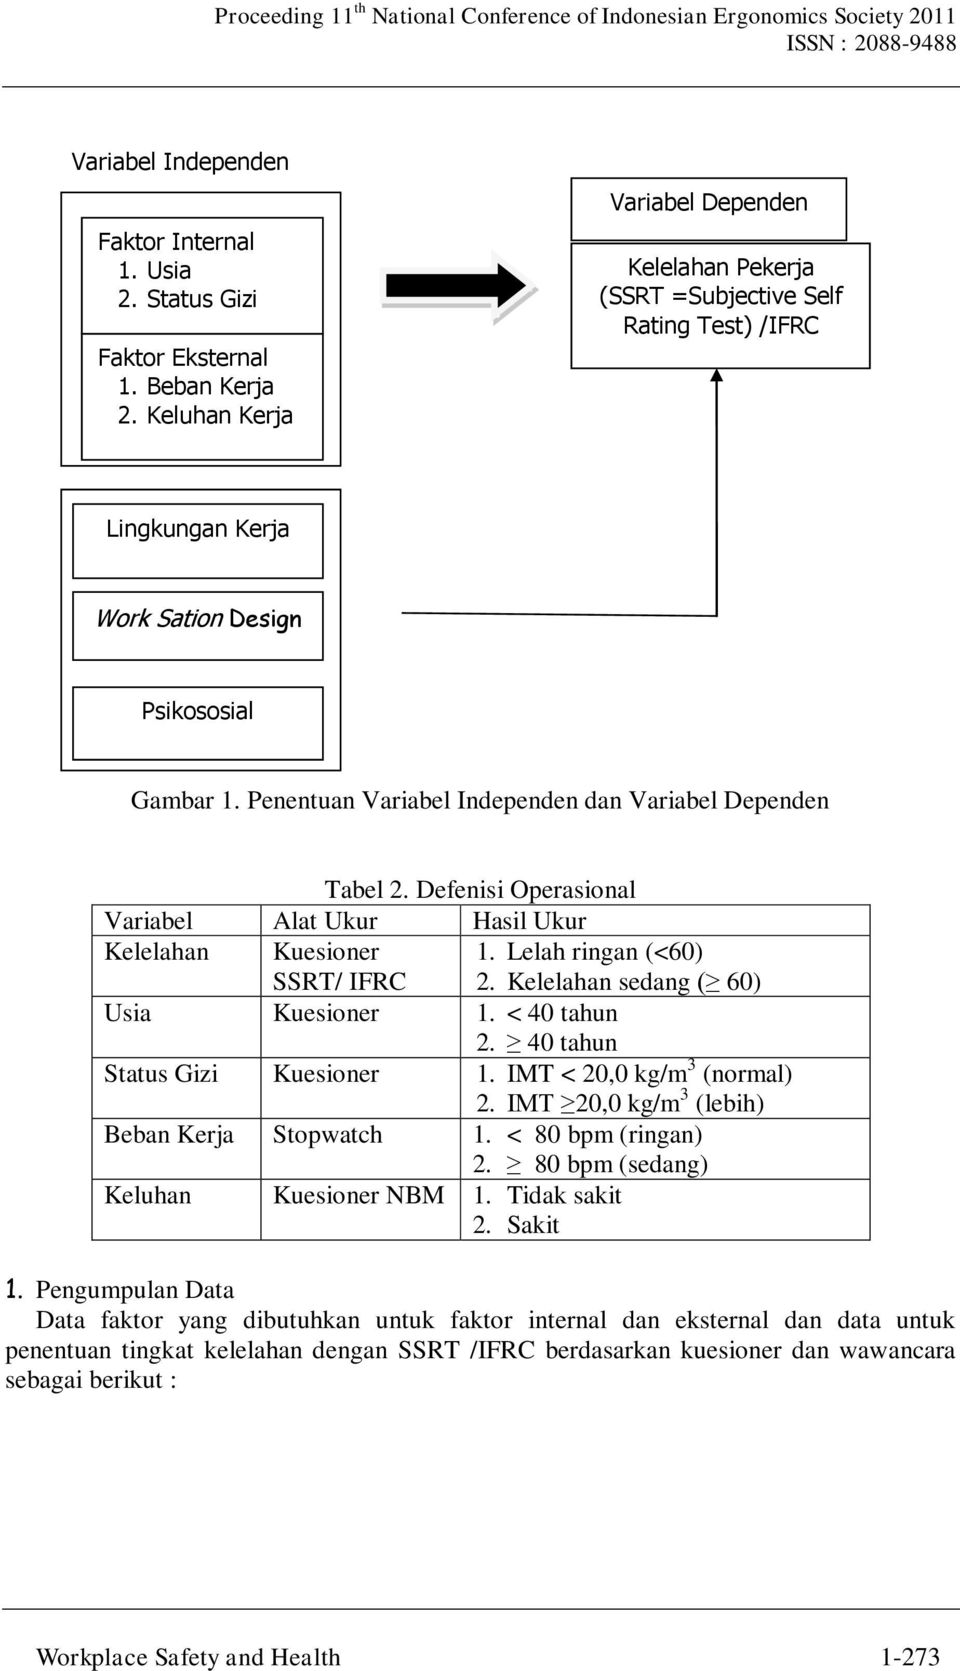 Penentuan Variabel Independen dan Variabel Dependen Tabel 2. Defenisi Operasional Variabel Alat Ukur Hasil Ukur Kelelahan Kuesioner SSRT/ IFRC 1. Lelah ringan (<60) 2.